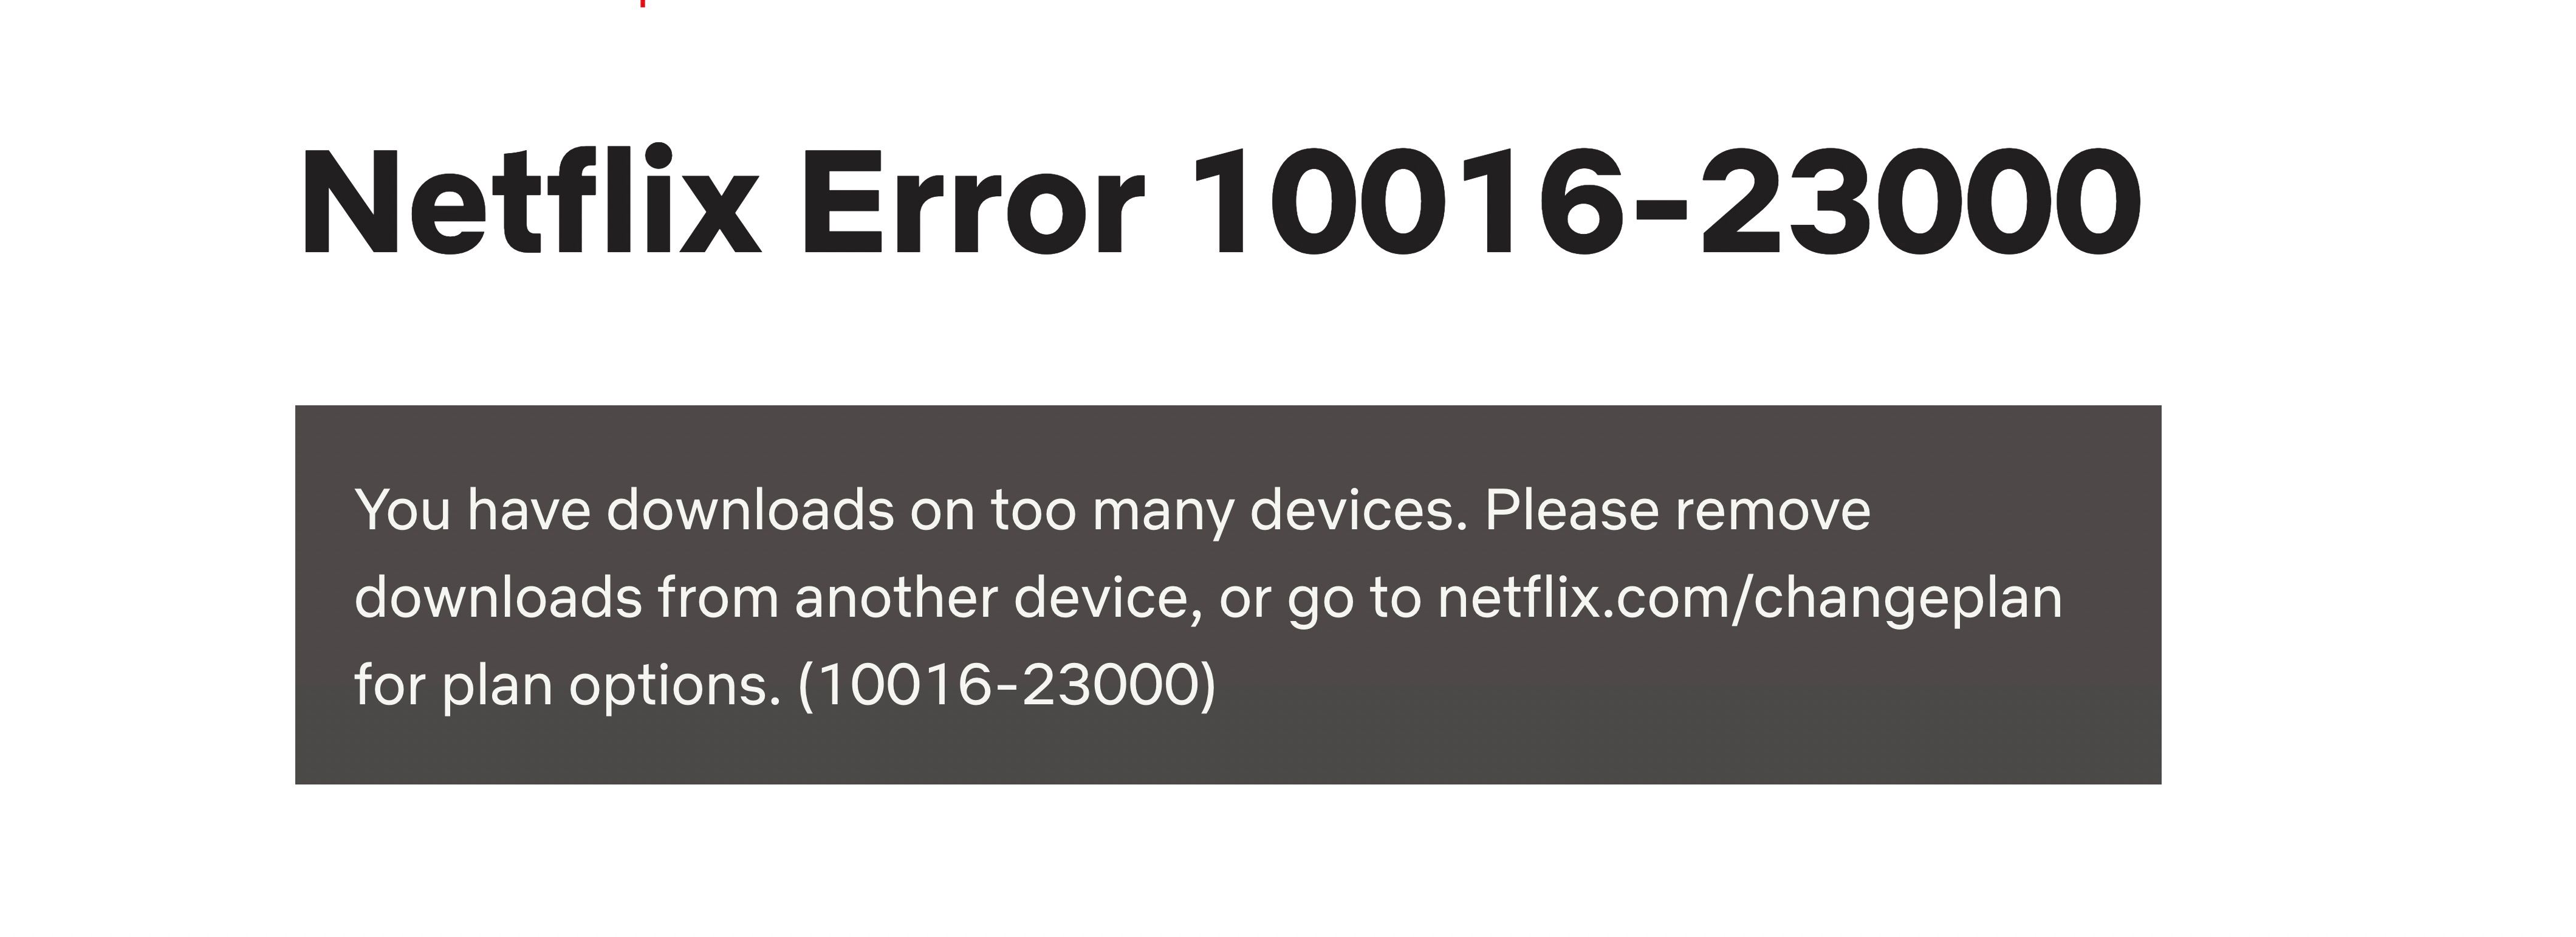 کد خطای دانلود Netflix- 10016-2300- دستگاه های دانلود زیادی دارید.